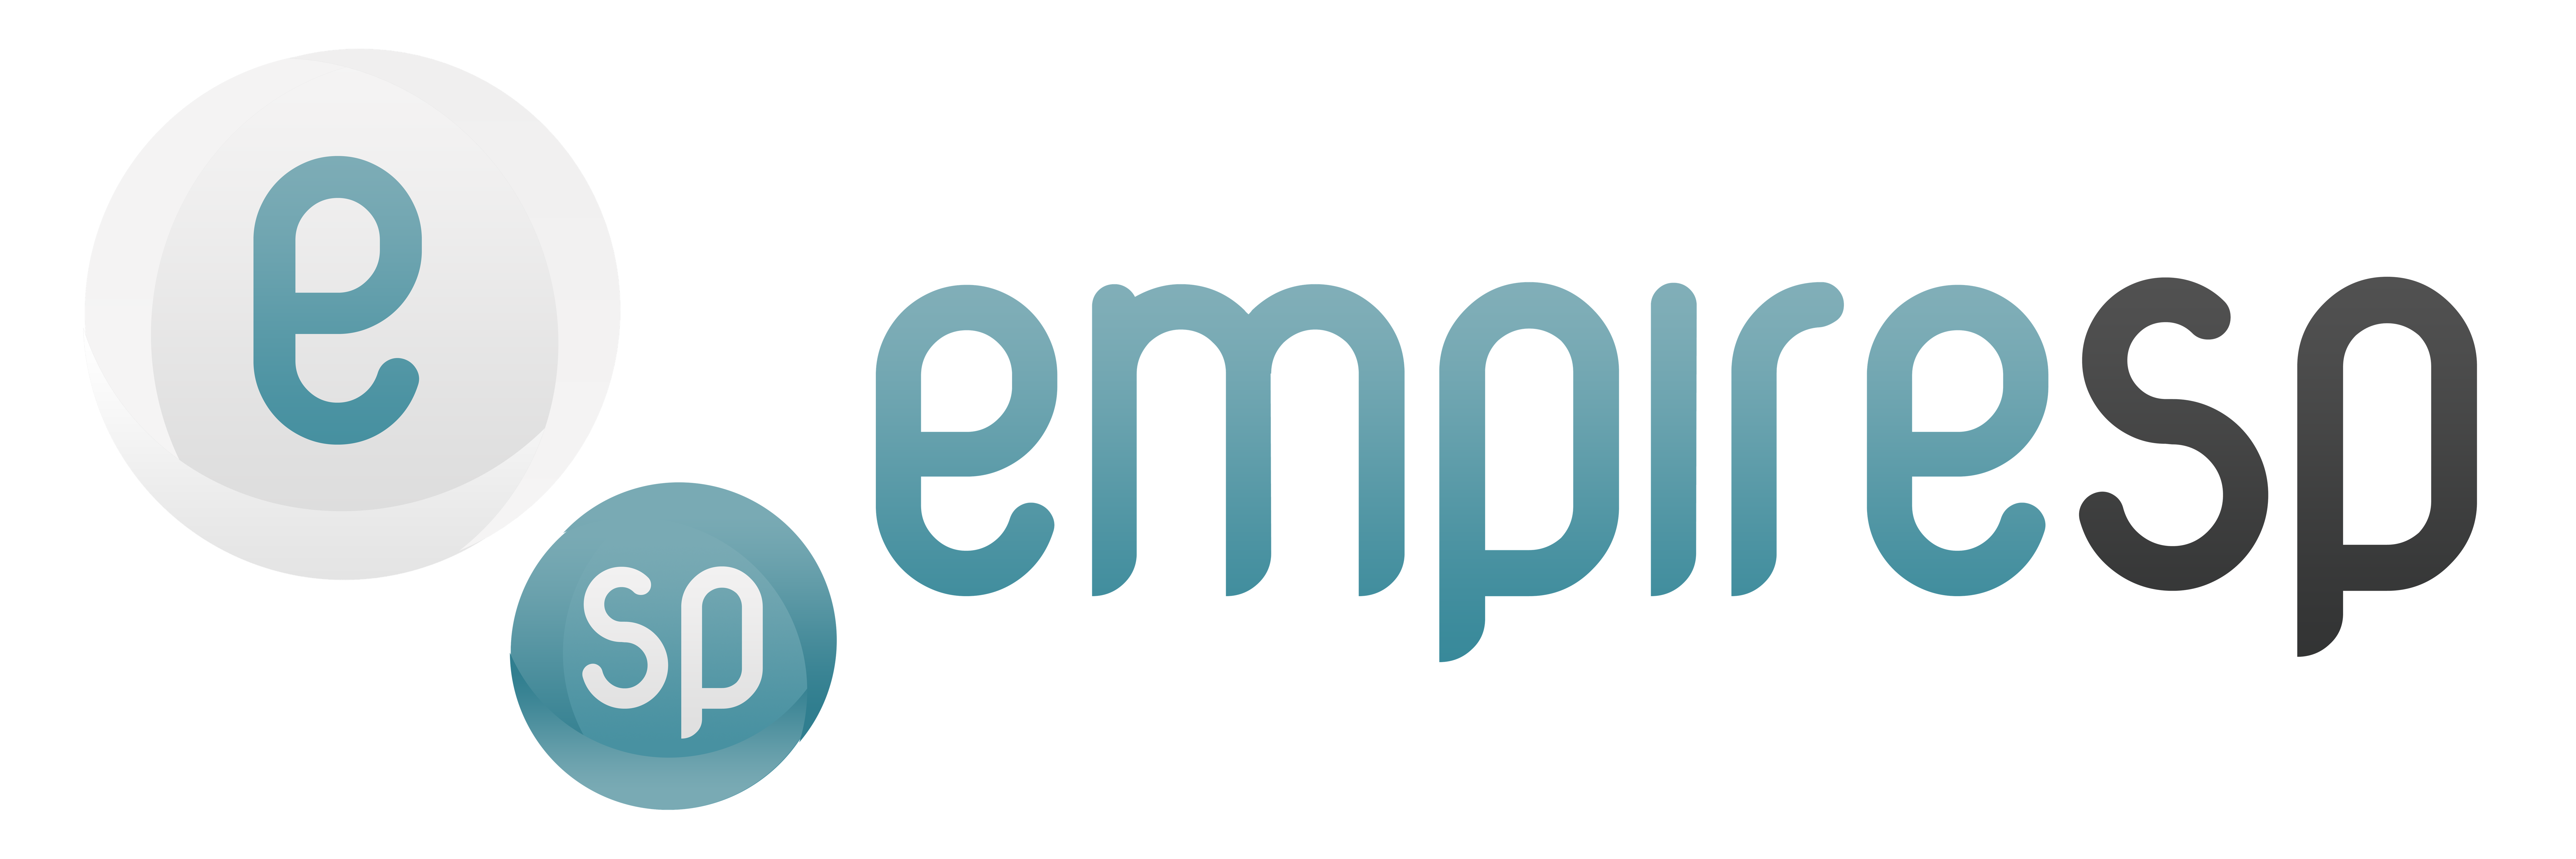 EmpireSP - Serviços de Alojamento